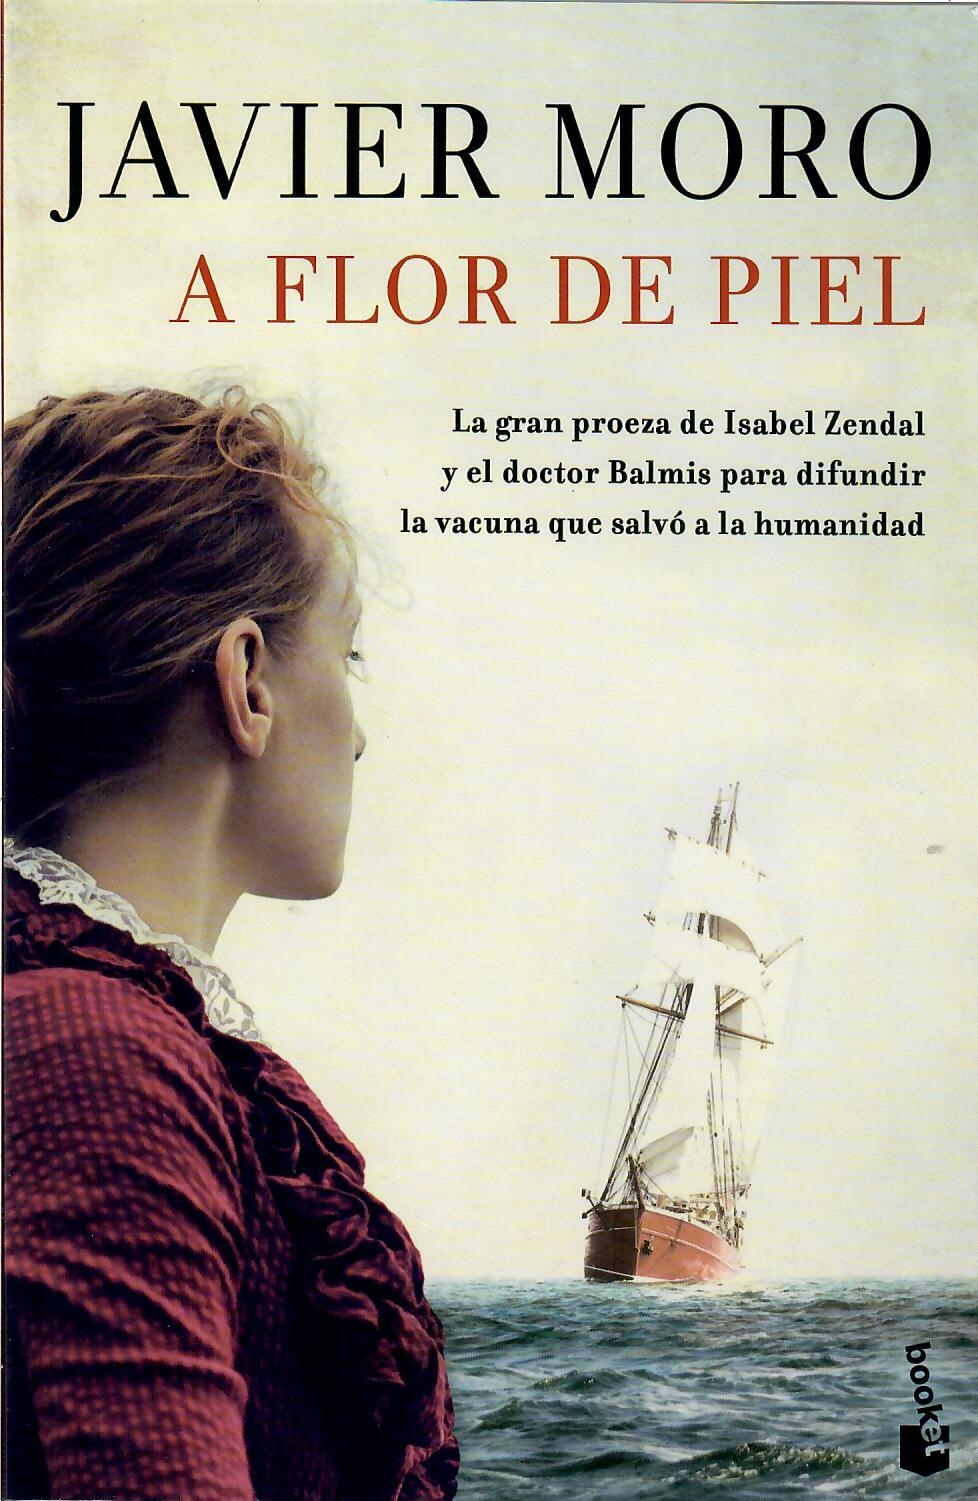 A FLOR DE PIEL - Javier Moro